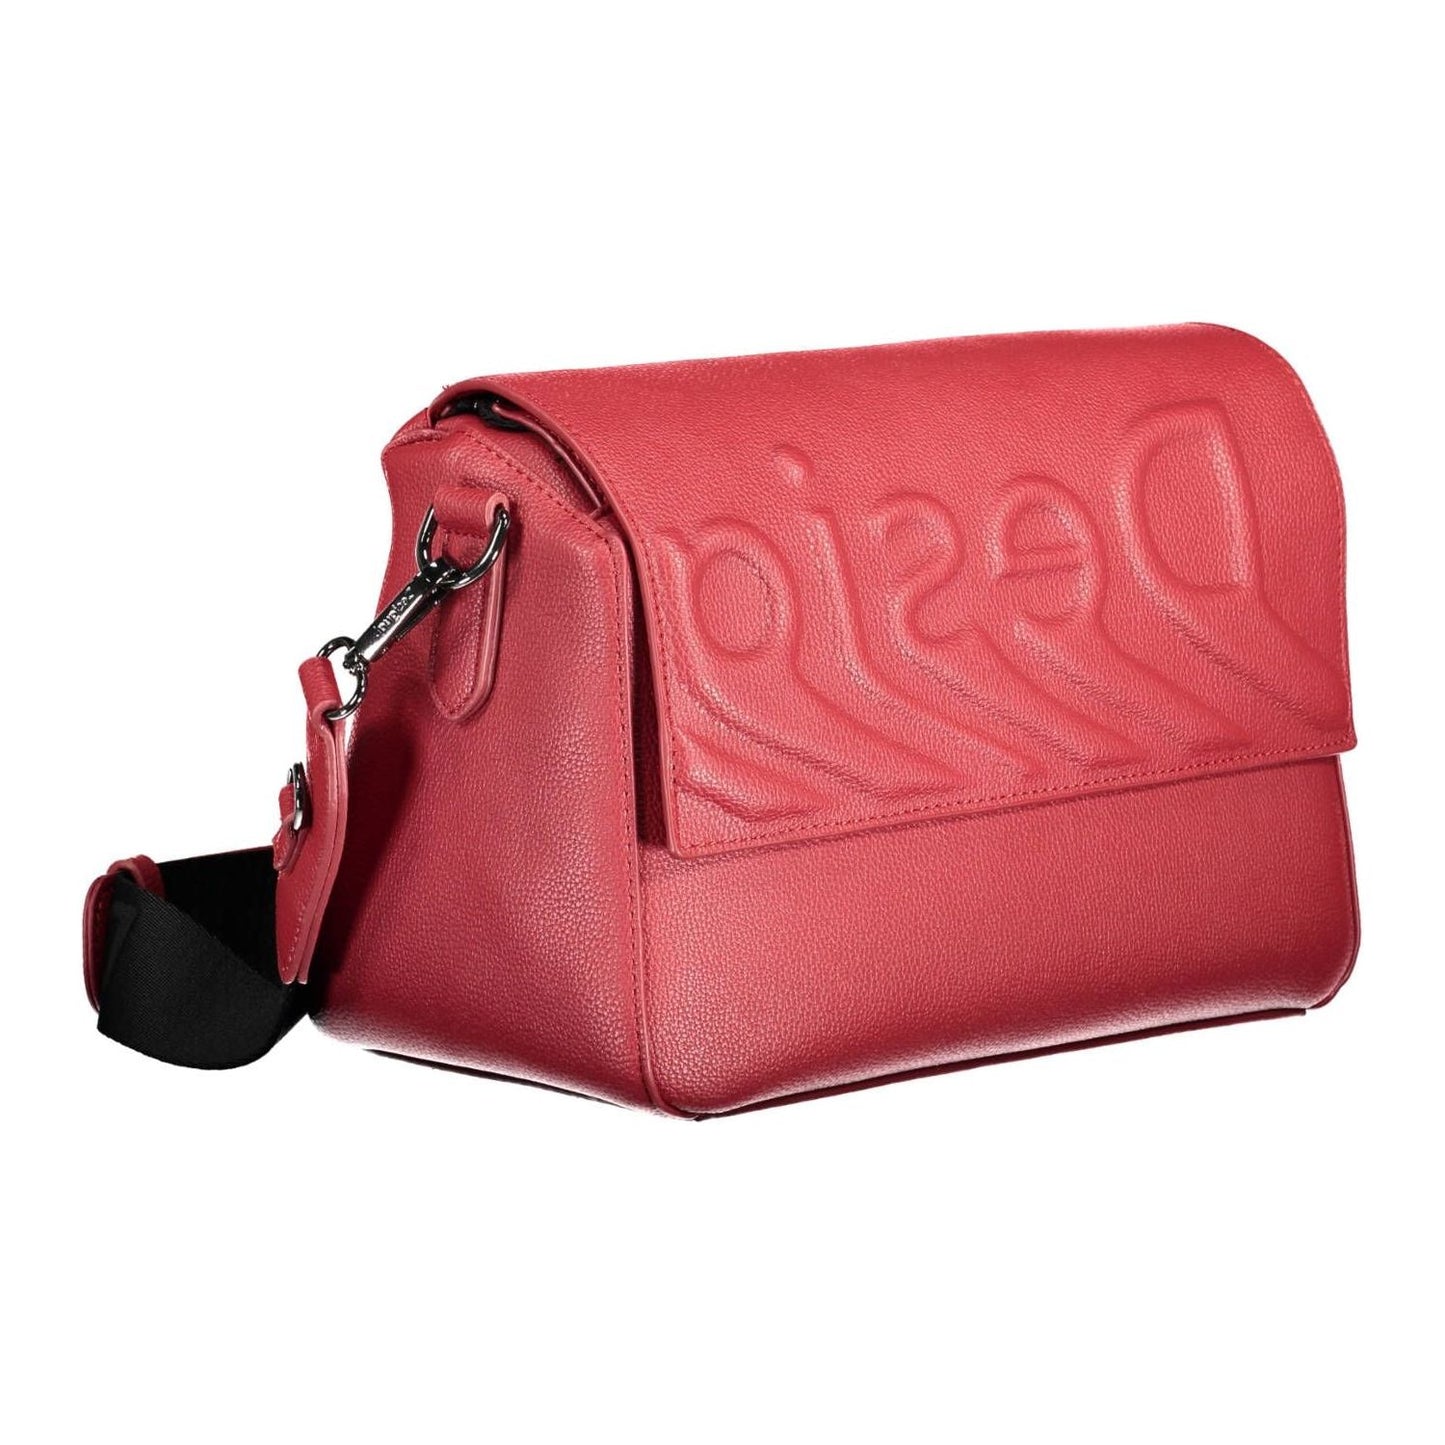 Desigual | Chic Red Contrasting Detail Shoulder Bag| McRichard Designer Brands   